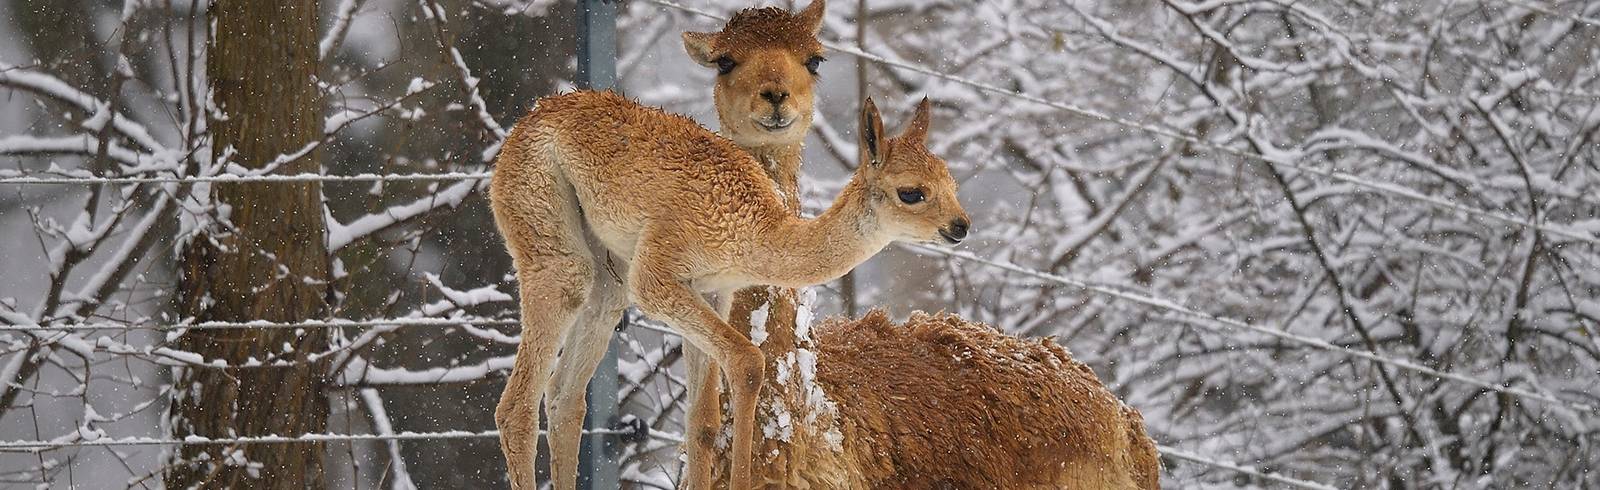 Tiergarten: Felliger Flitzer im Schnee